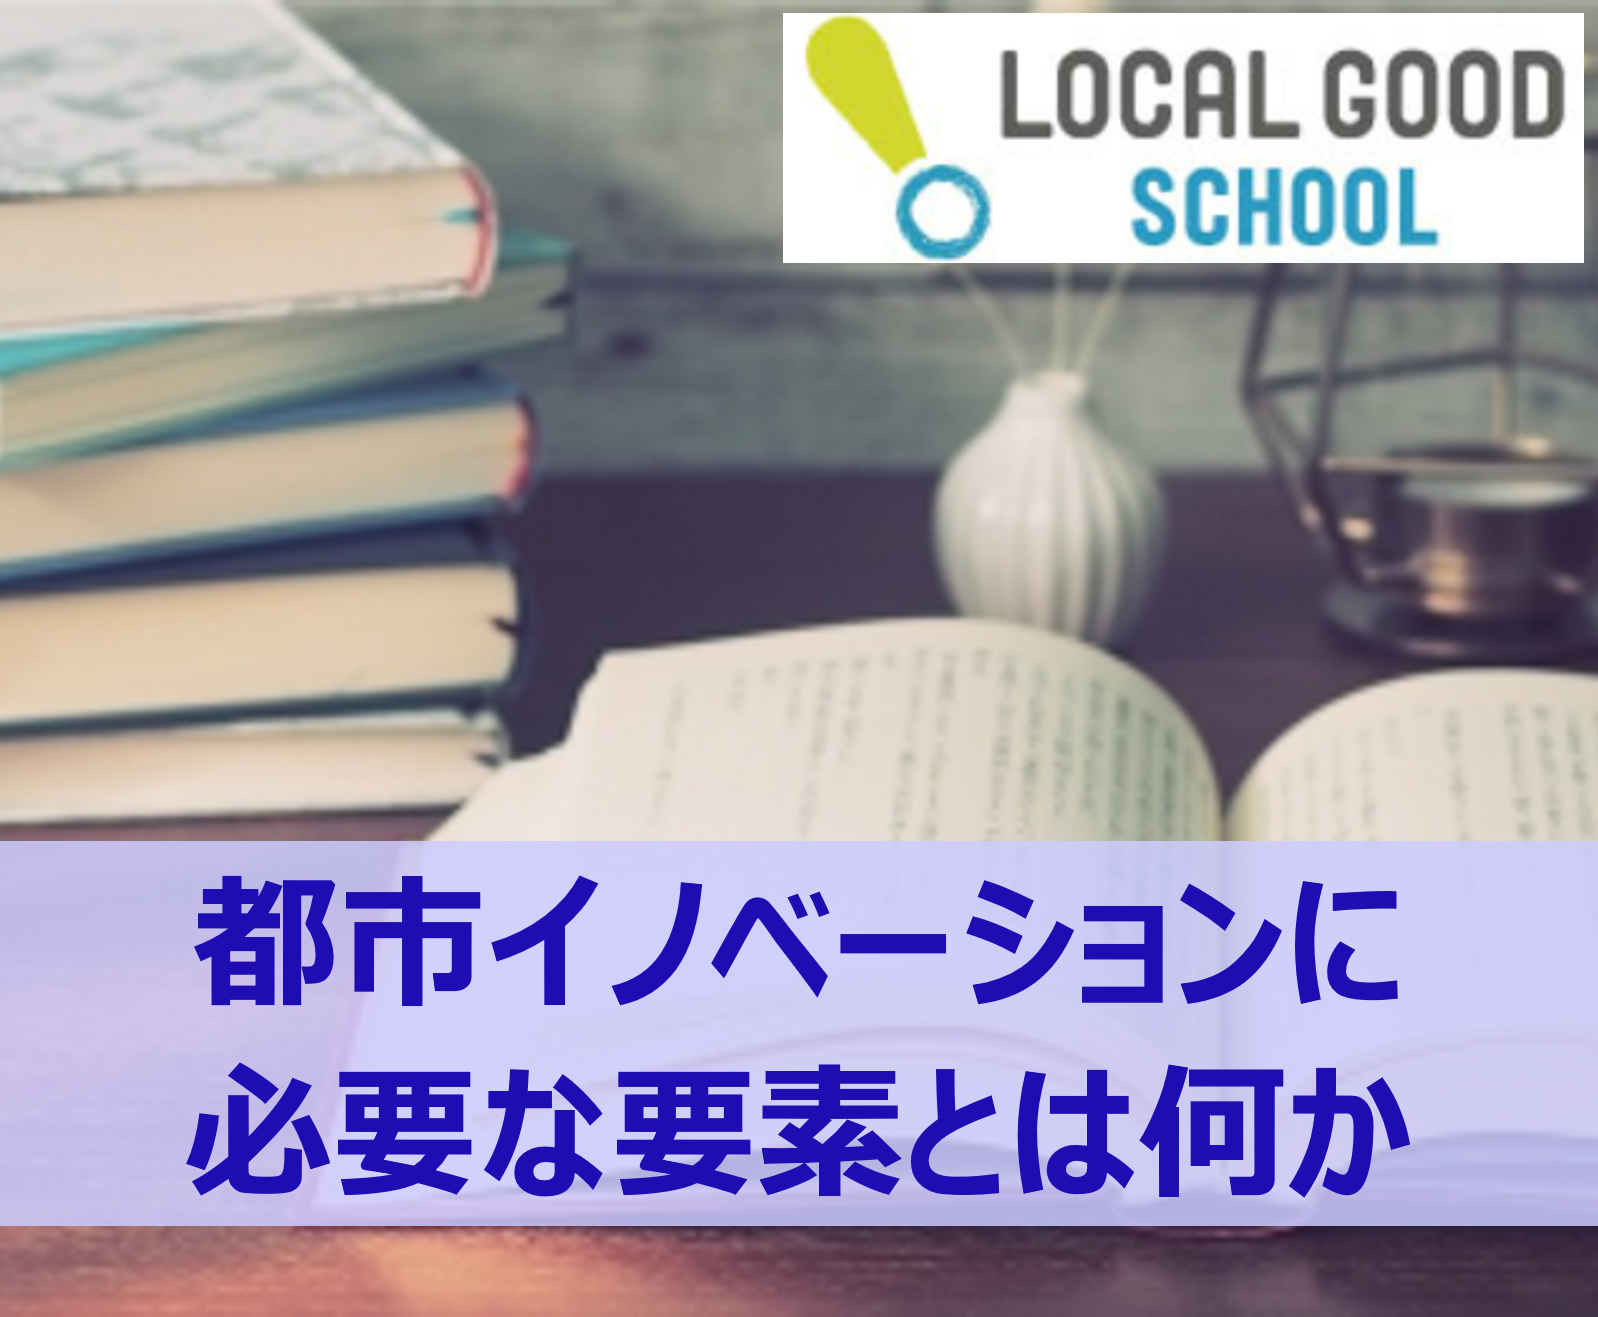 【LOCAL GOOD SCHOOL】横浜の活性化に繋がる都市のイノベーションについて考える《オーサートーク》